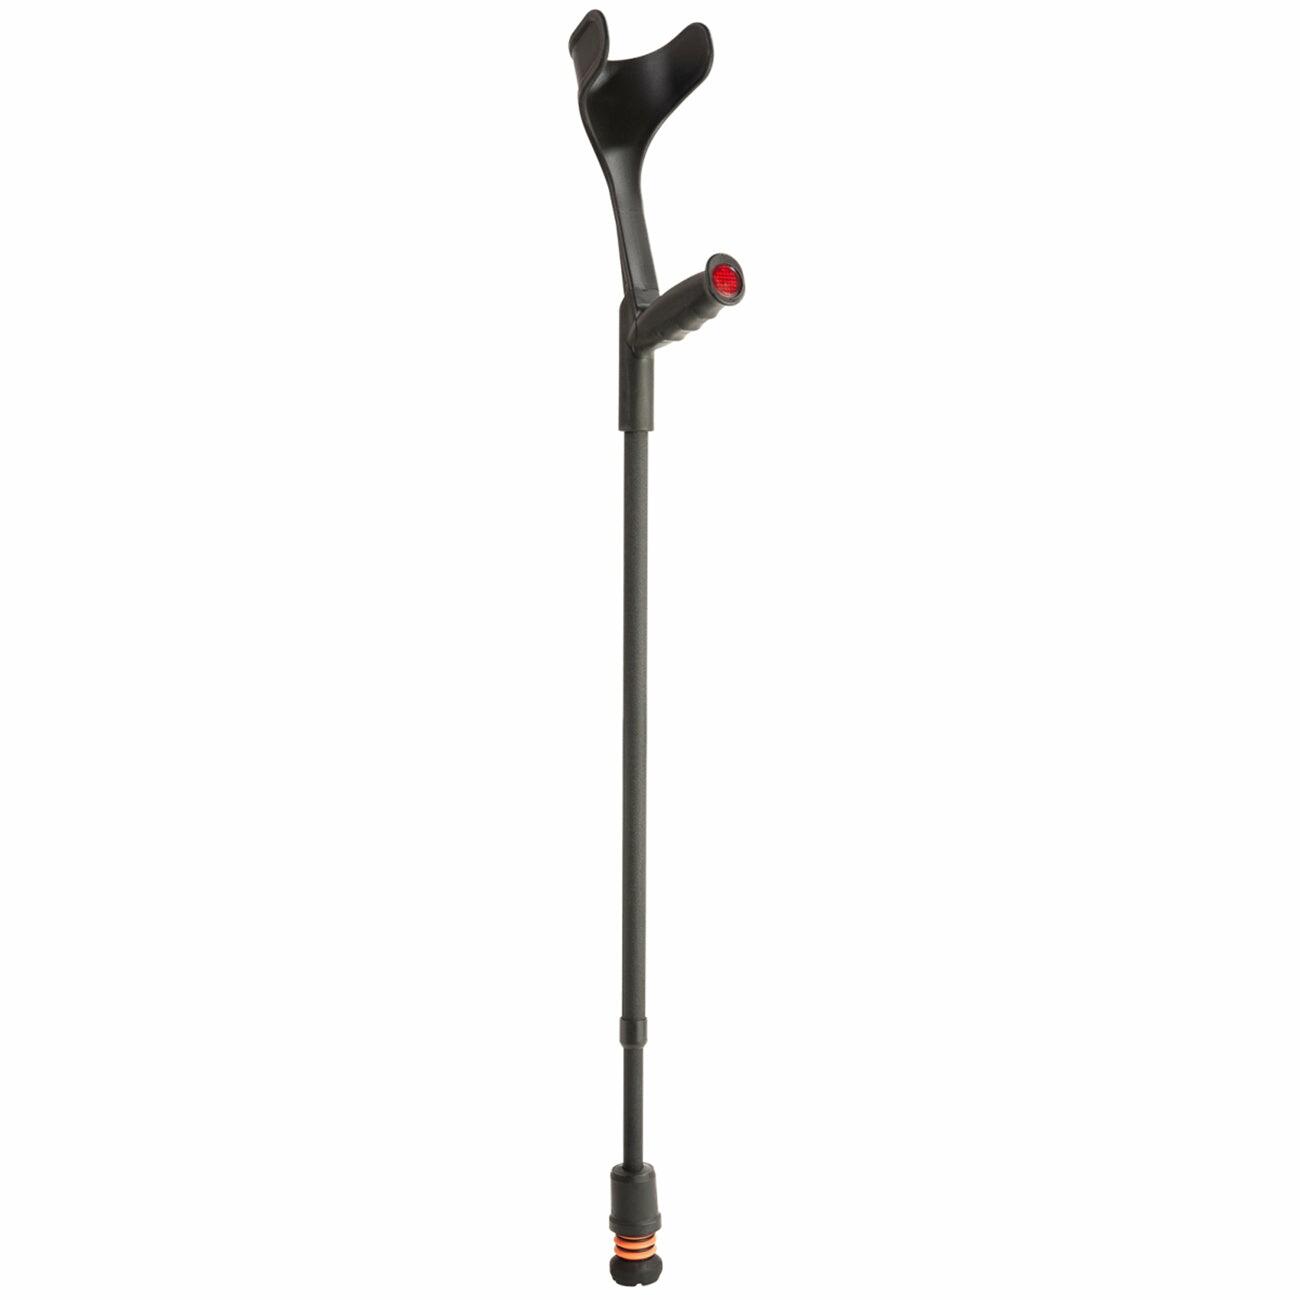 A single black Flexyfoot Soft Grip Open Cuff Crutch